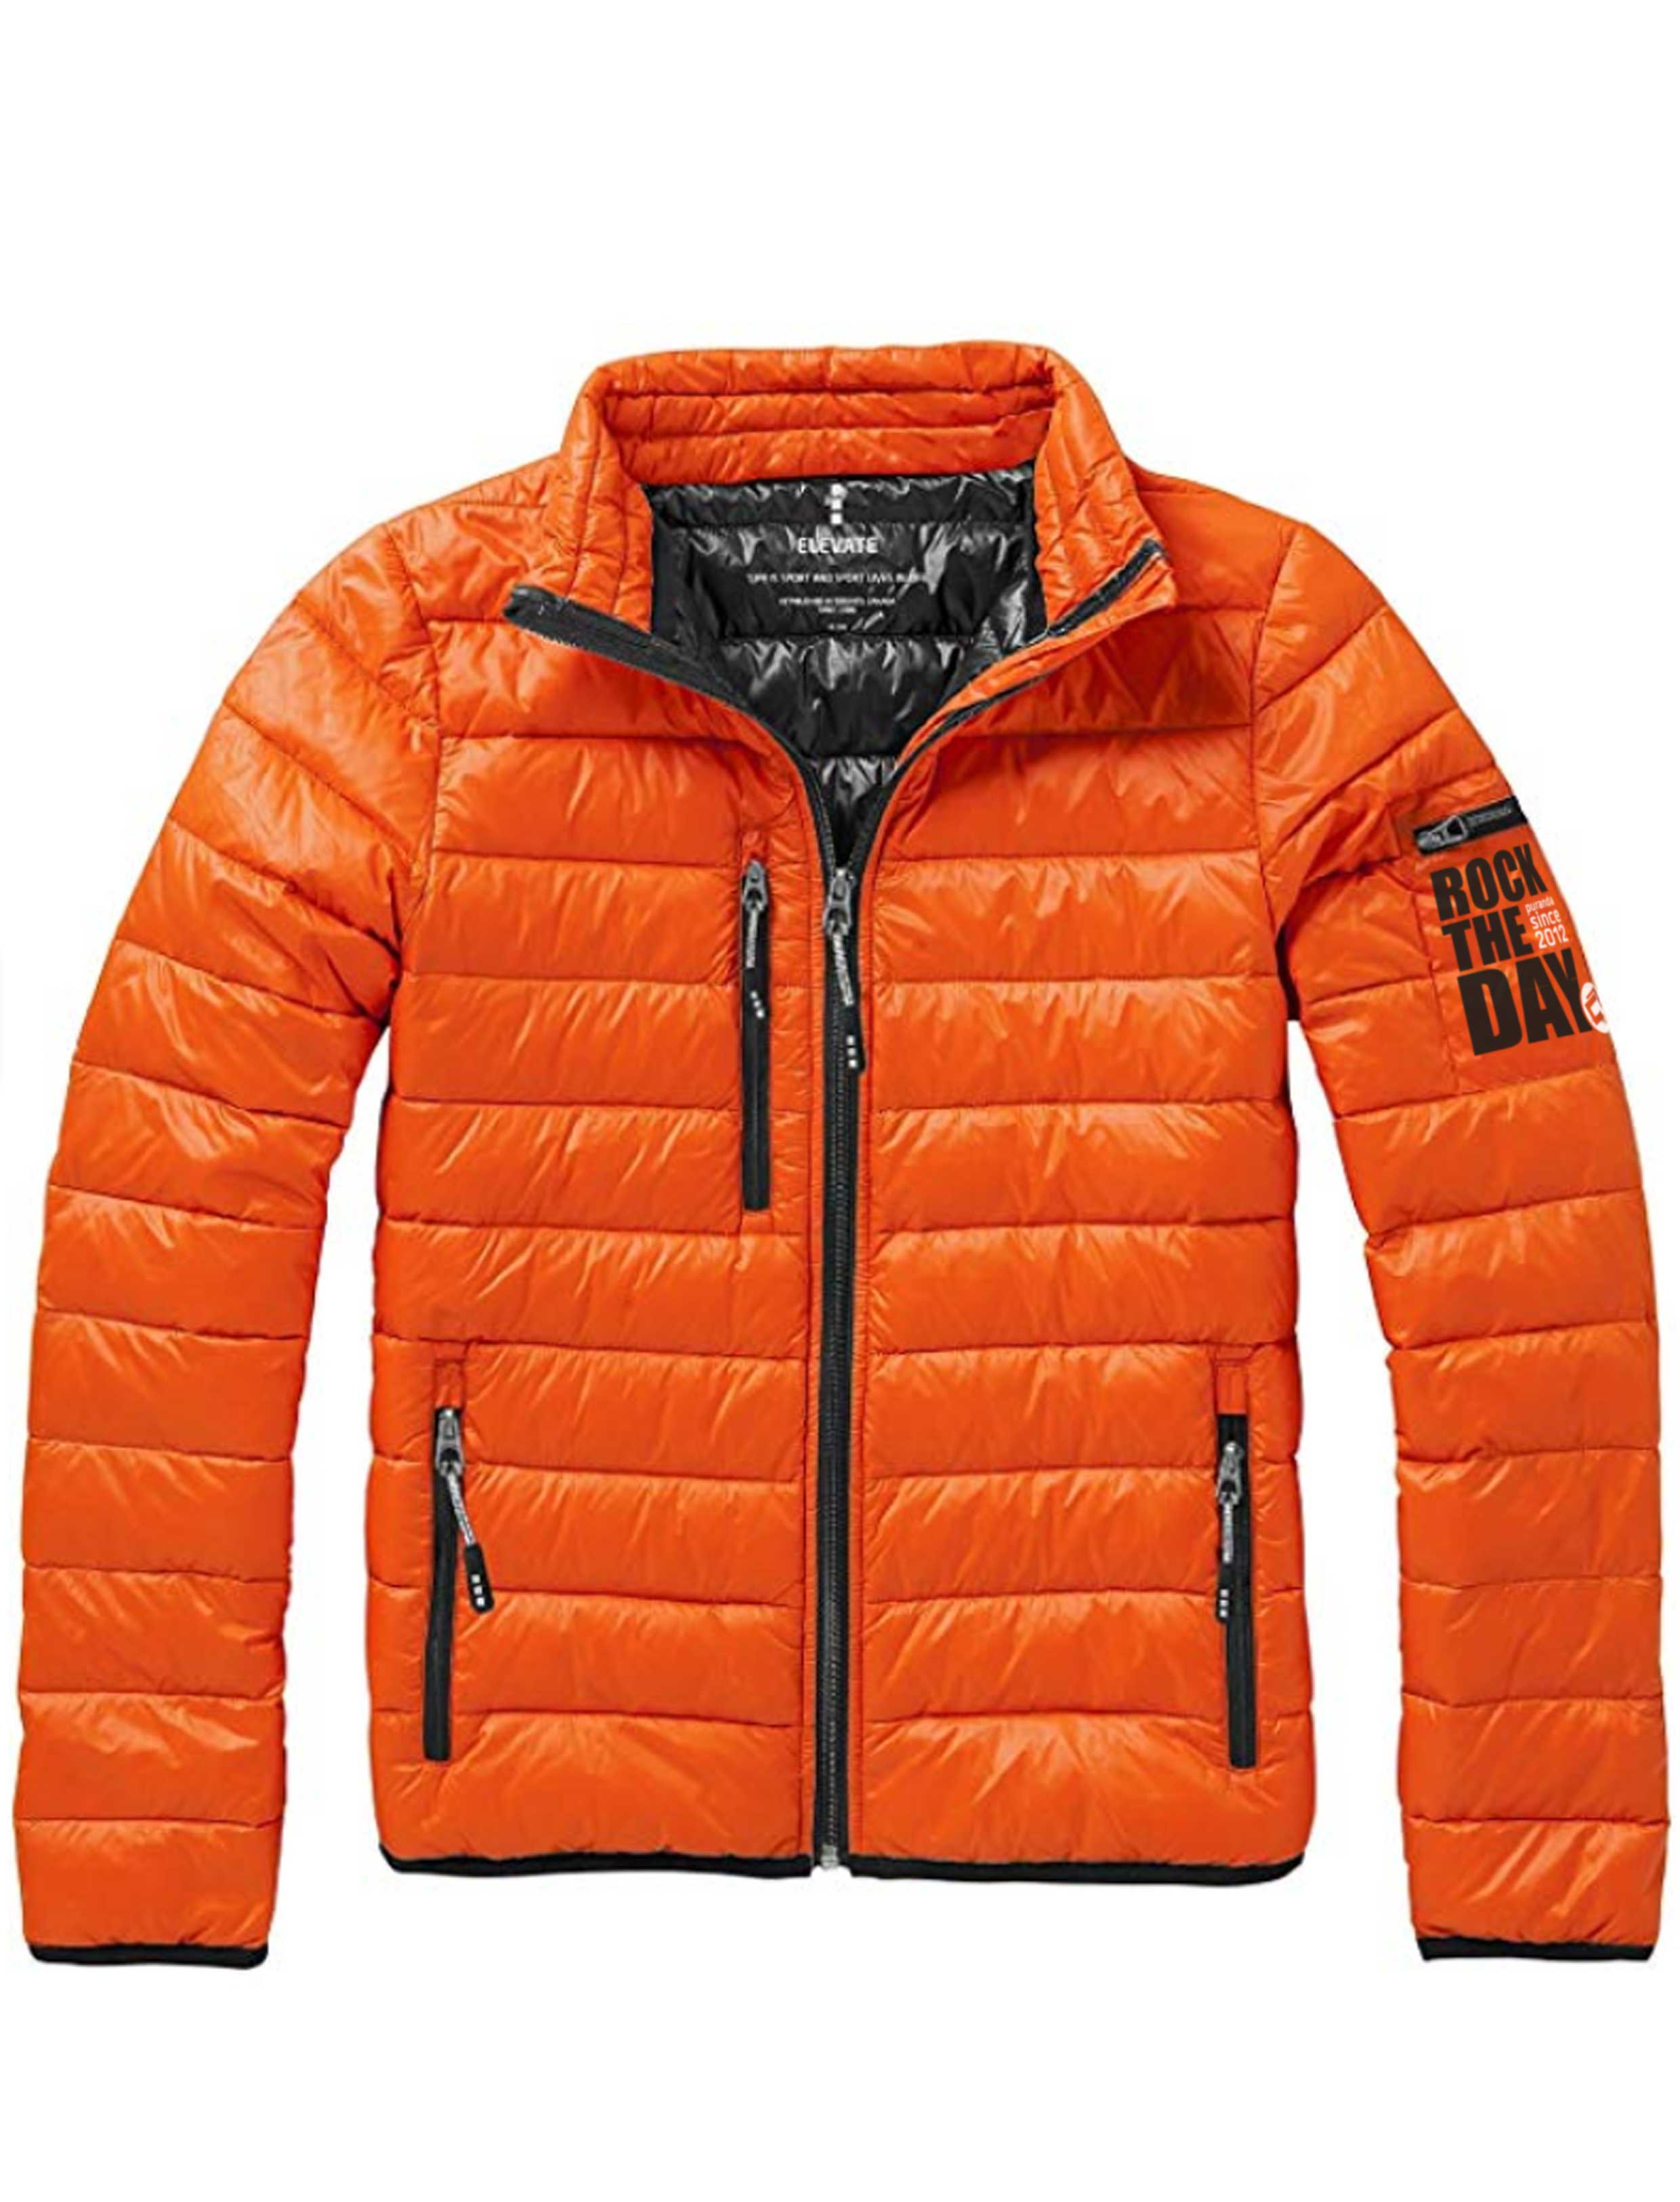 Куртка легкий пух. Куртка мужская Northland оранжевая. Куртка h2o мужская оранжевая. Chervo куртка мужская оранжевая гольф. Куртка Оутвентуре мужская оранжевая.